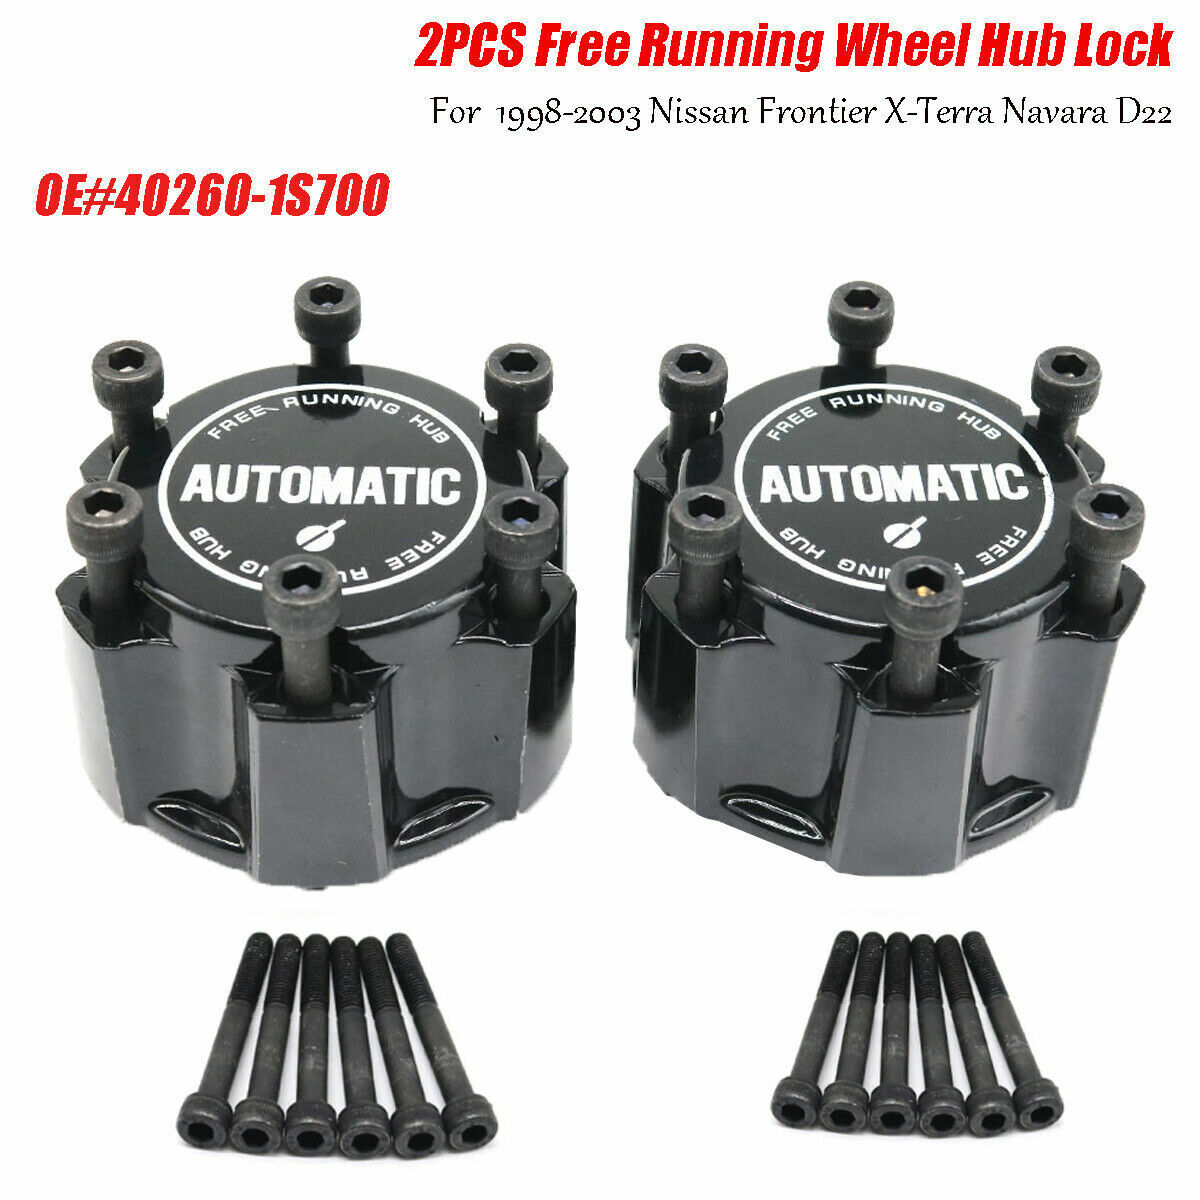 40260-1S700 Free Running Wheel Hub Lock For Nissan Frontier X-Terra Navara D22